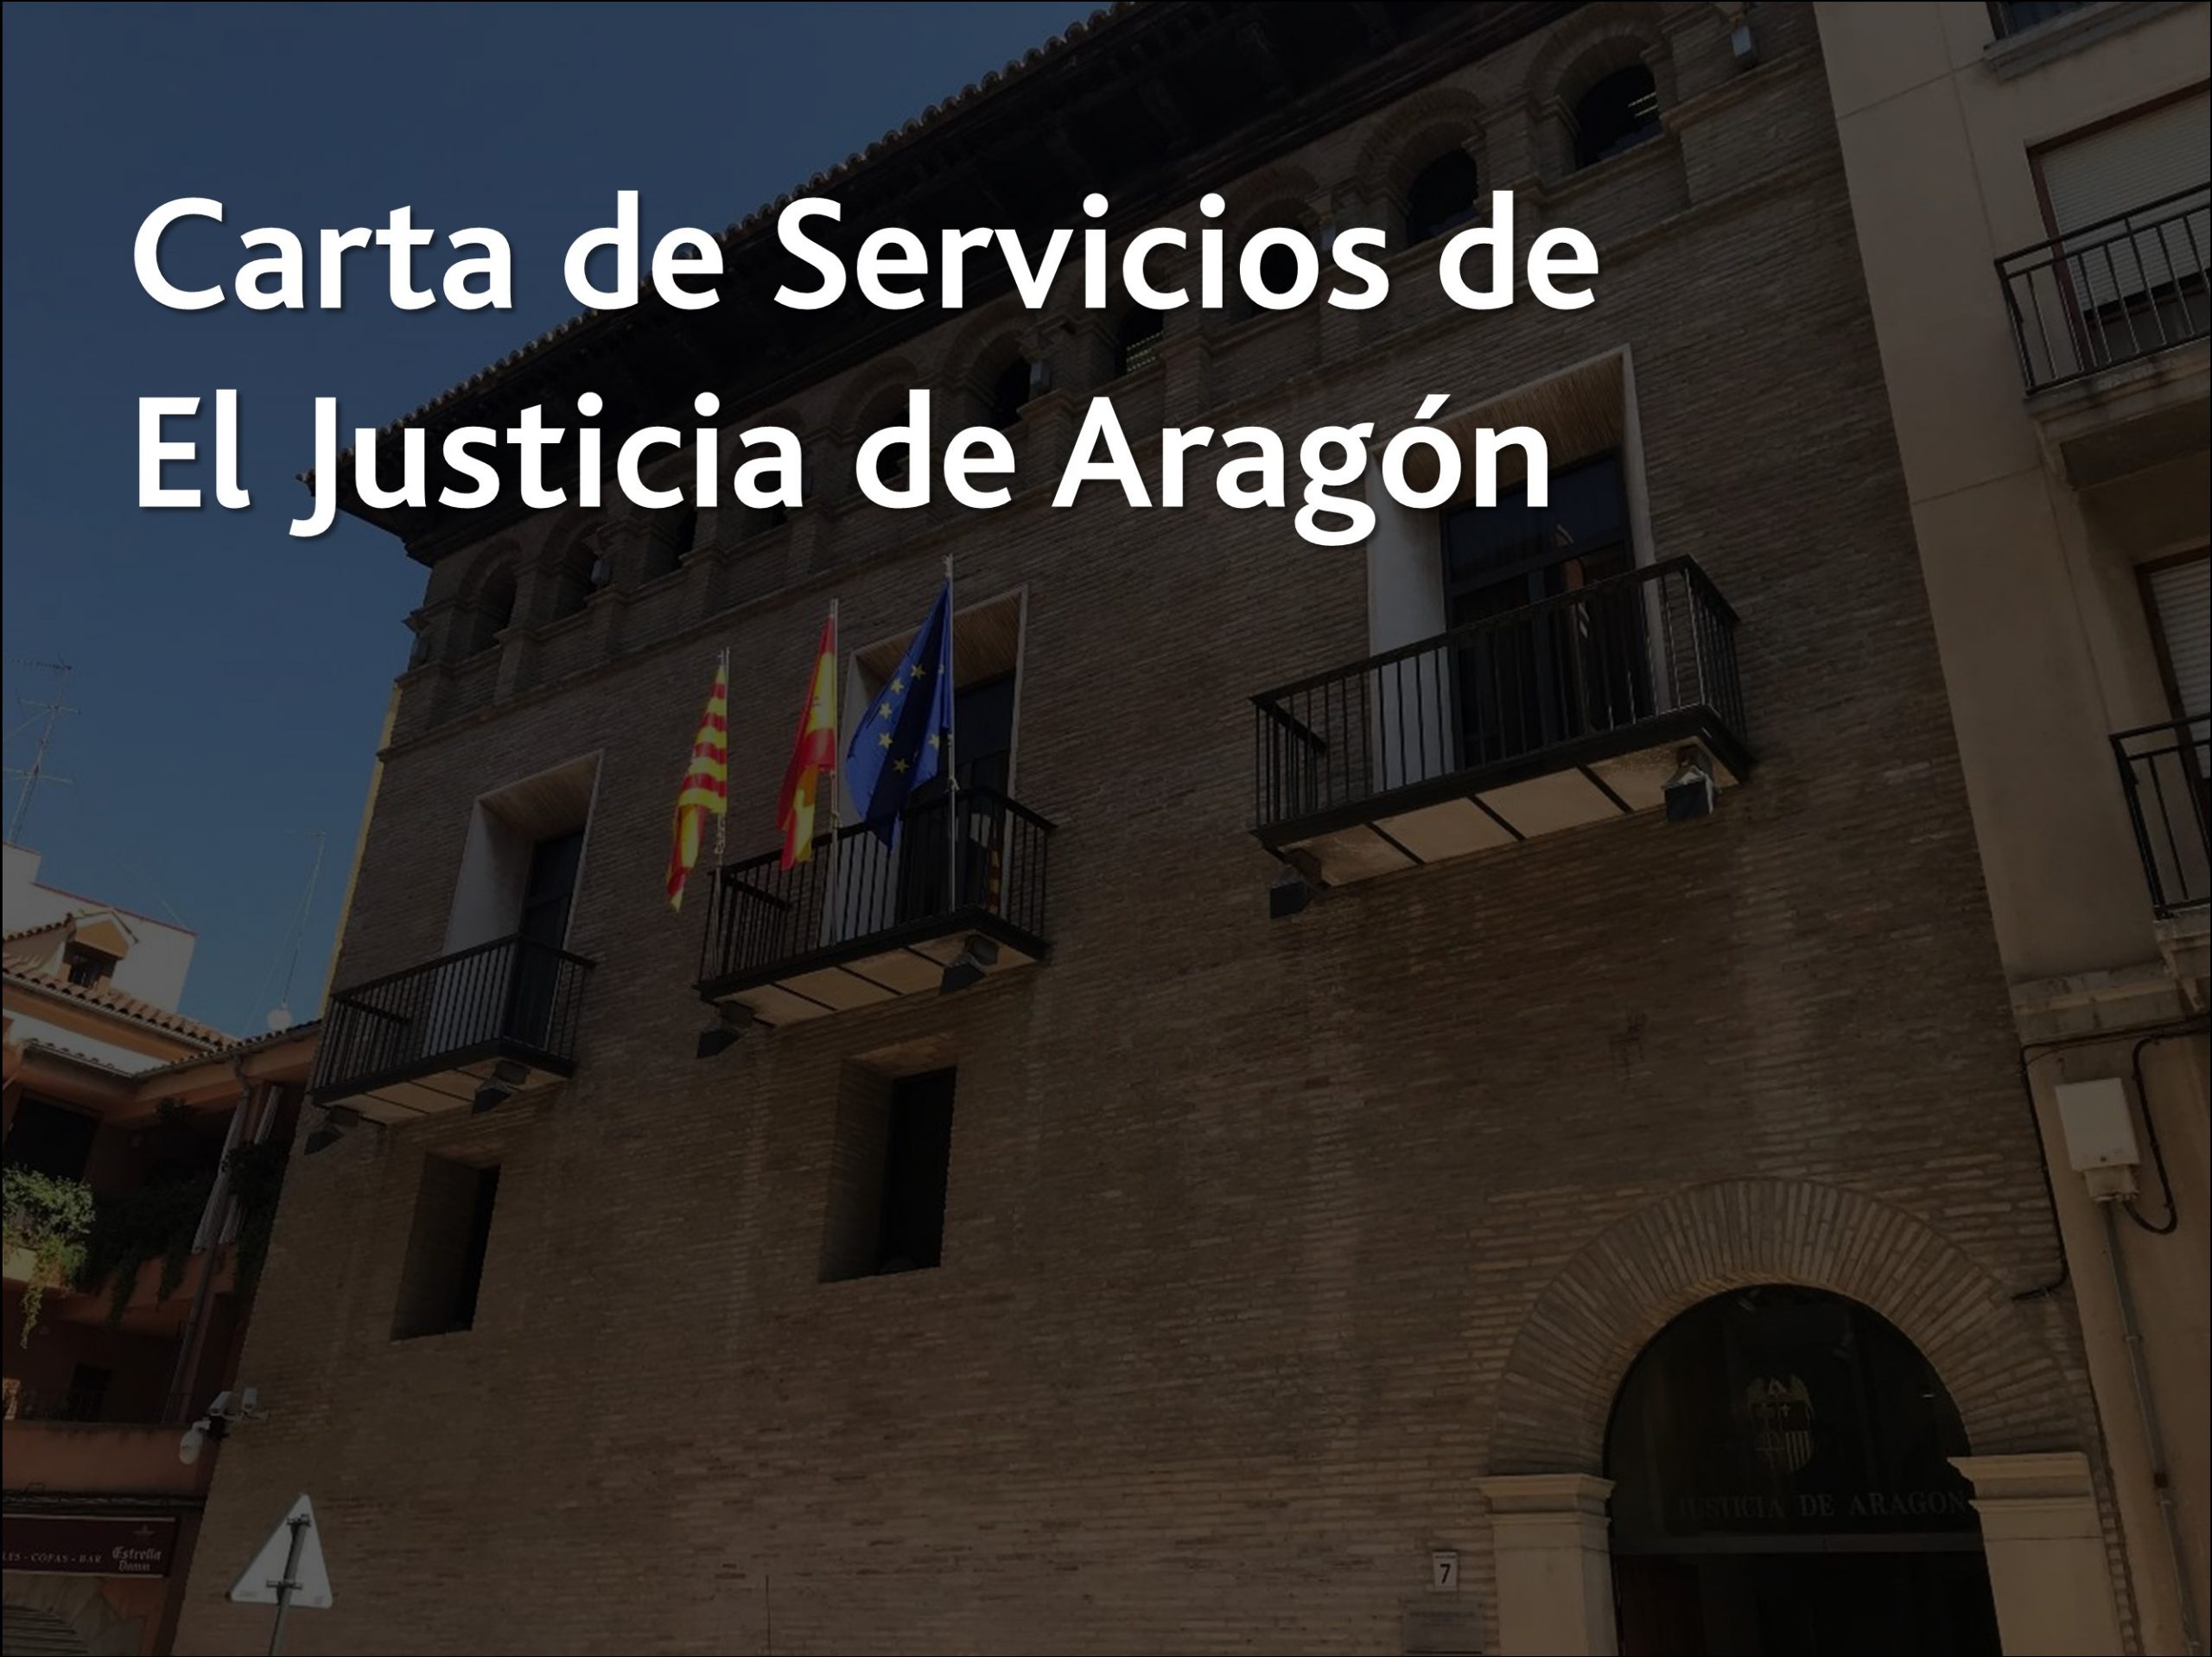 Carta de servicios de El Justicia de Aragón - Acceso al documento pdf